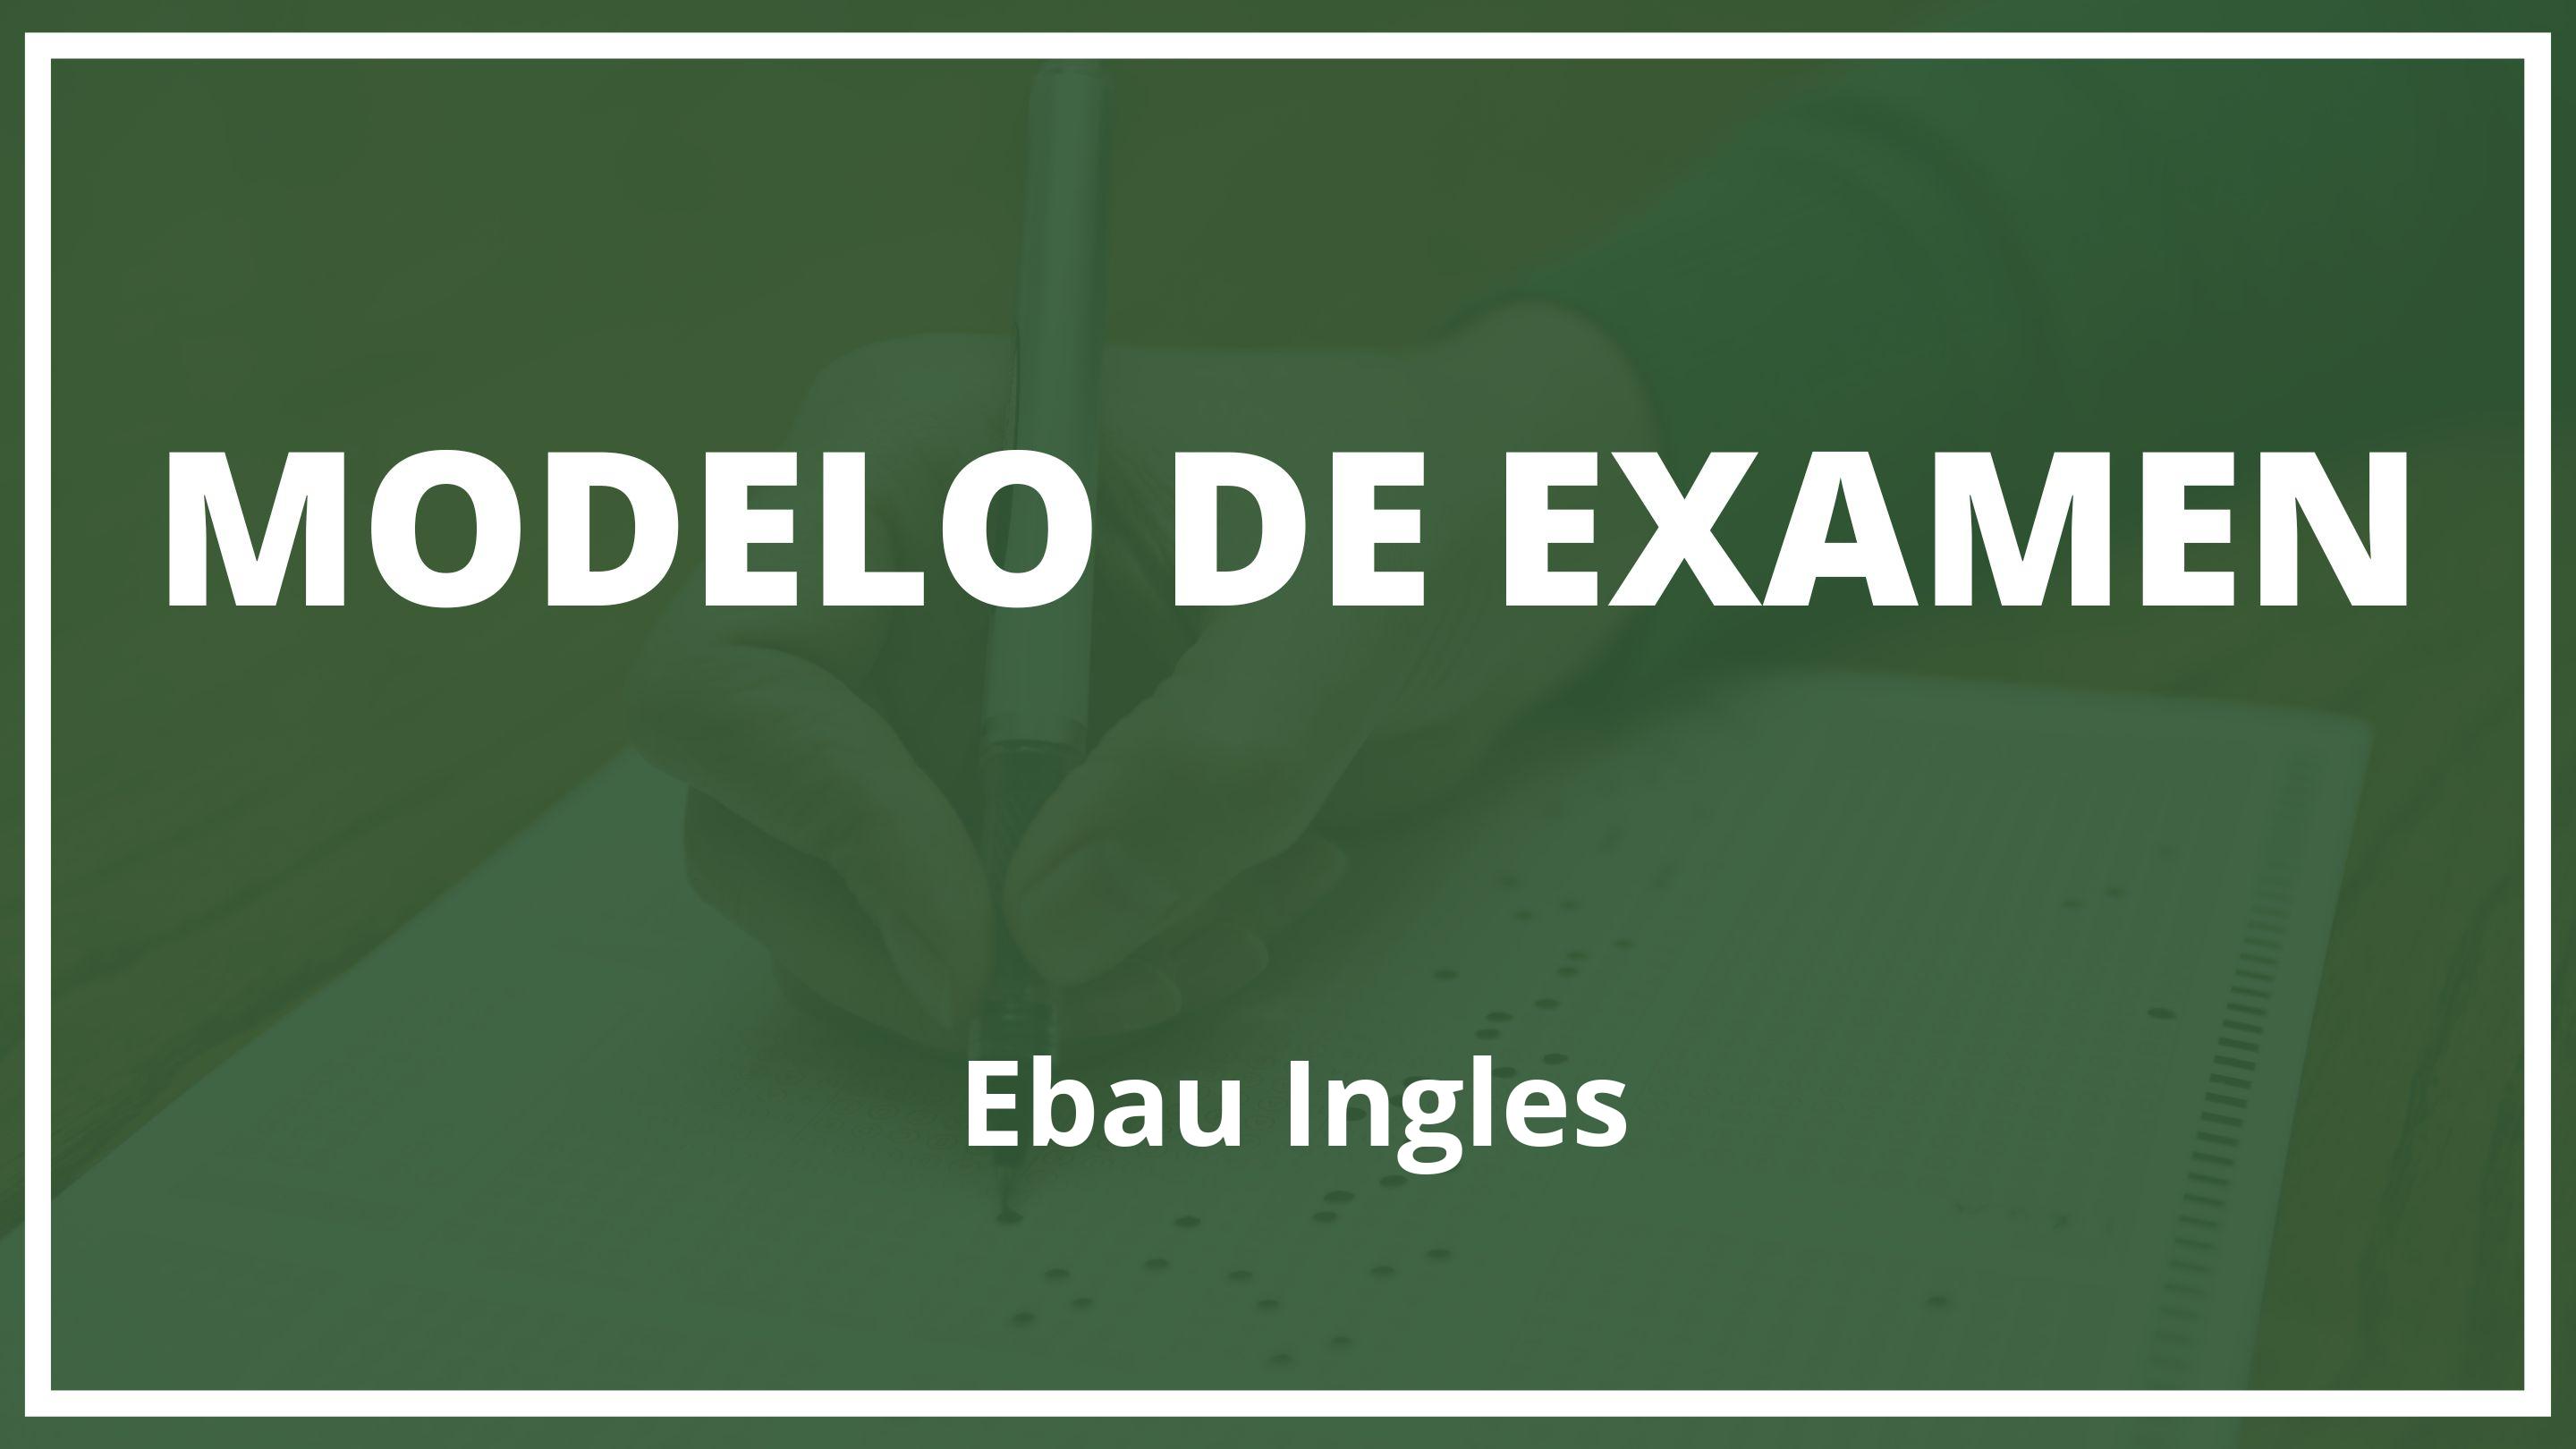 Examen Ebau Ingles